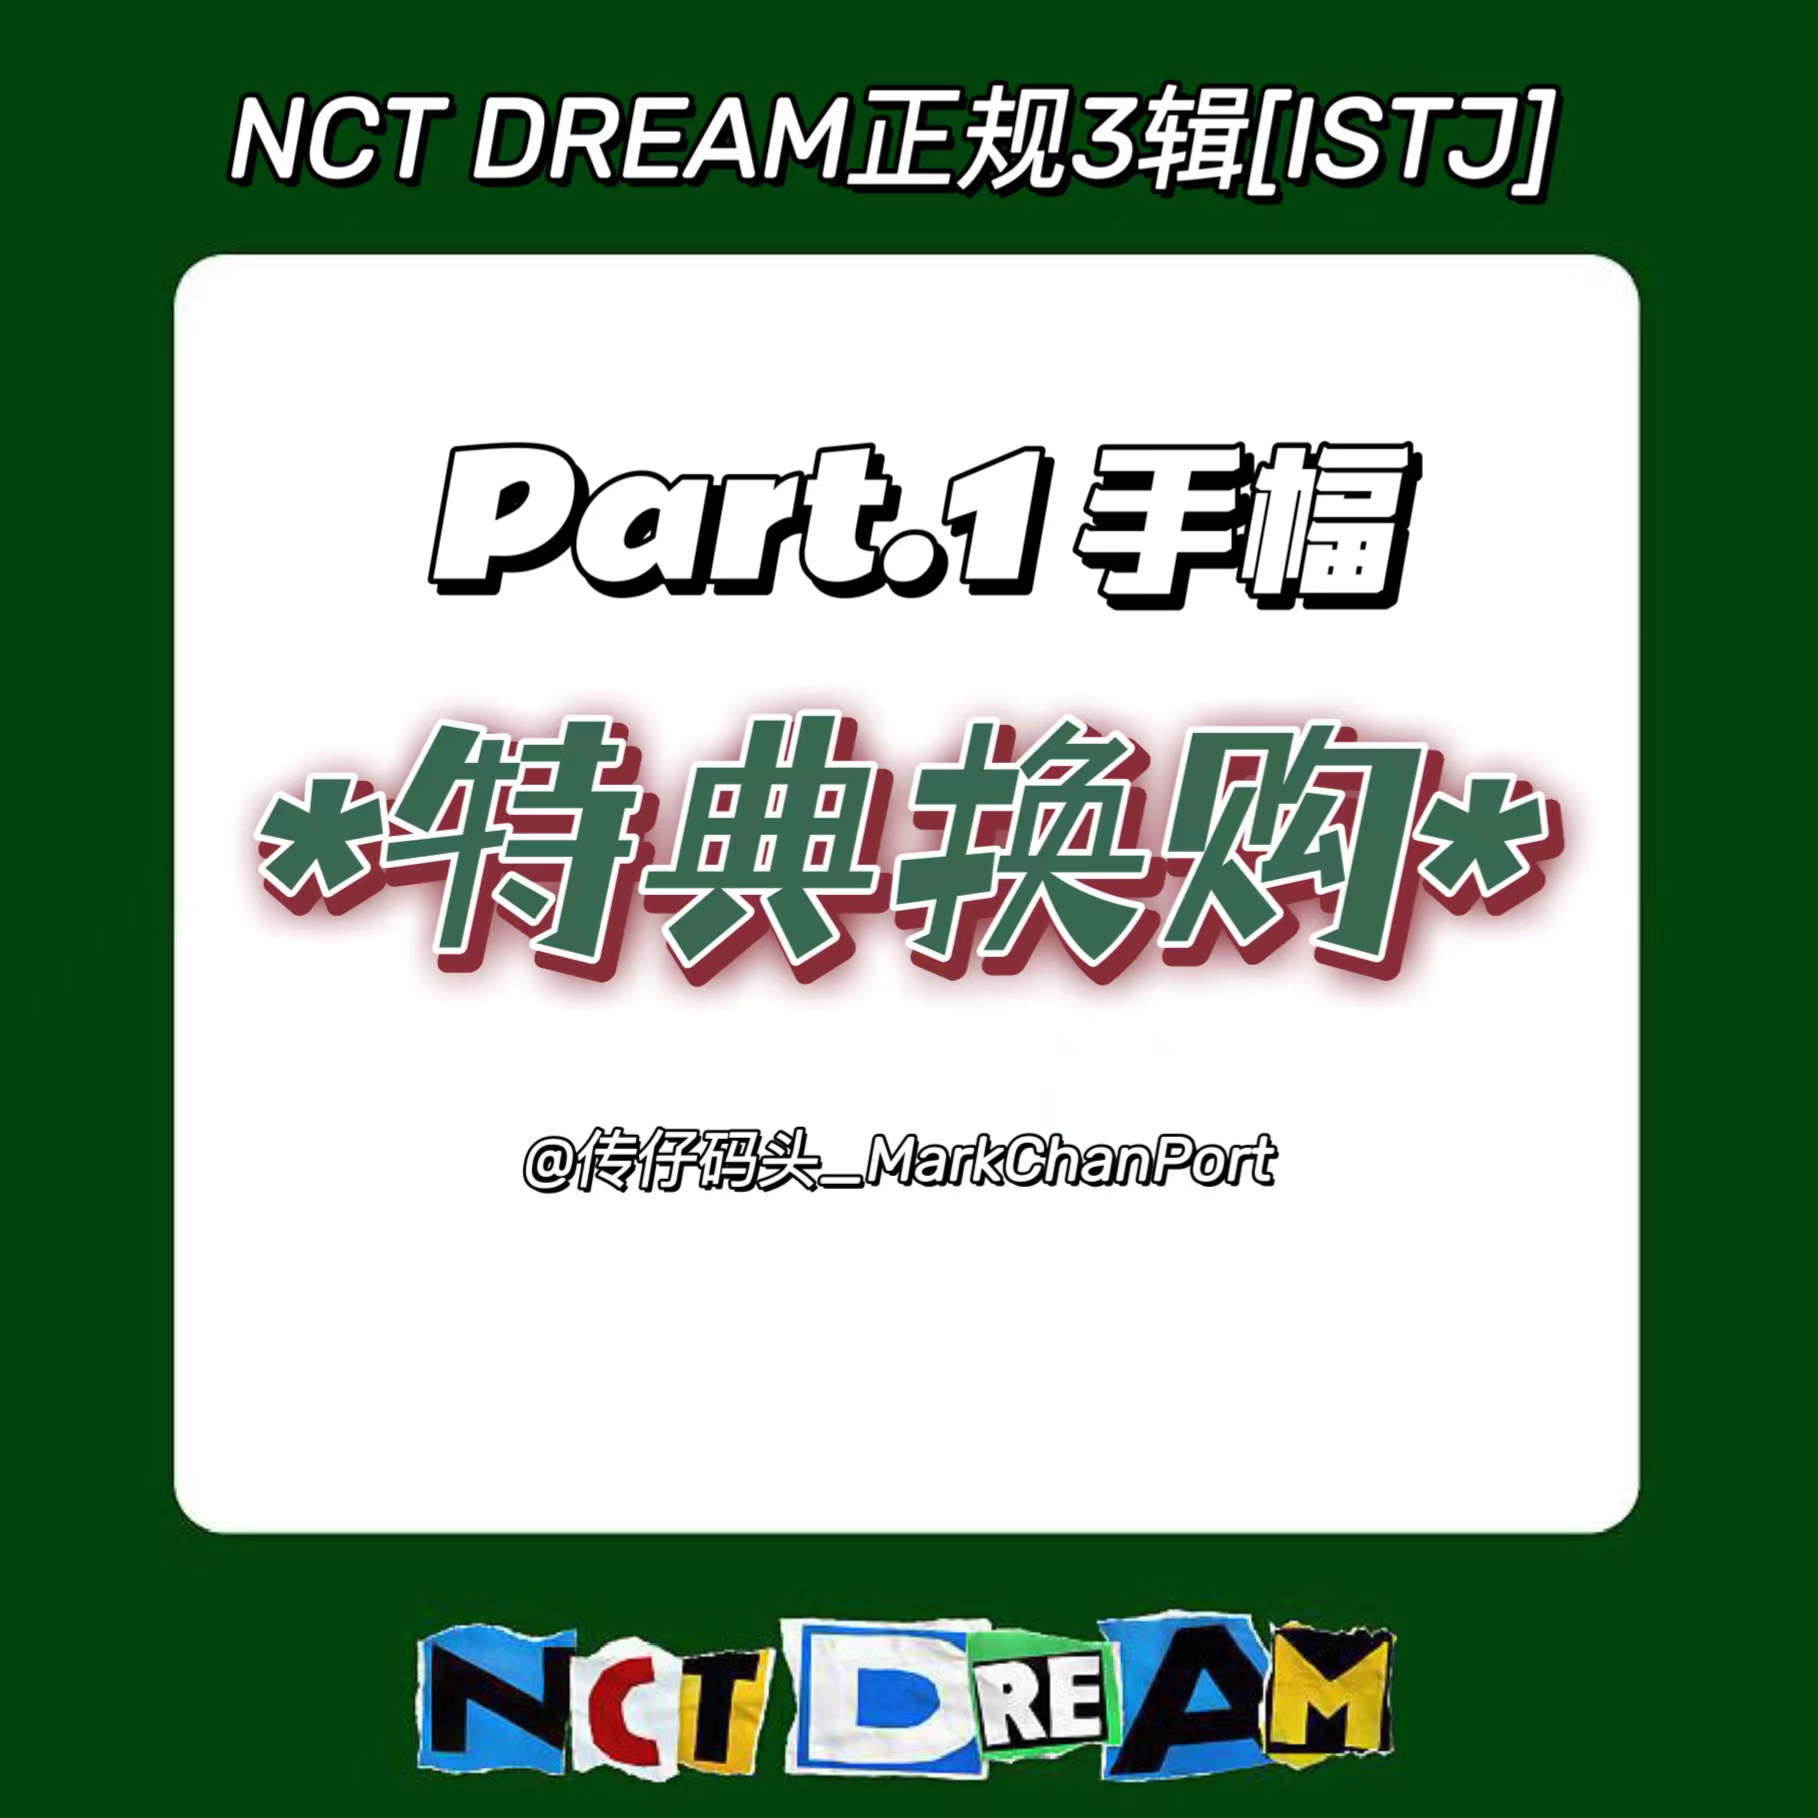 [全款 手幅特典 特典专] NCT DREAM - 正规3辑 [ISTJ] _马东吧_MarkChanBar